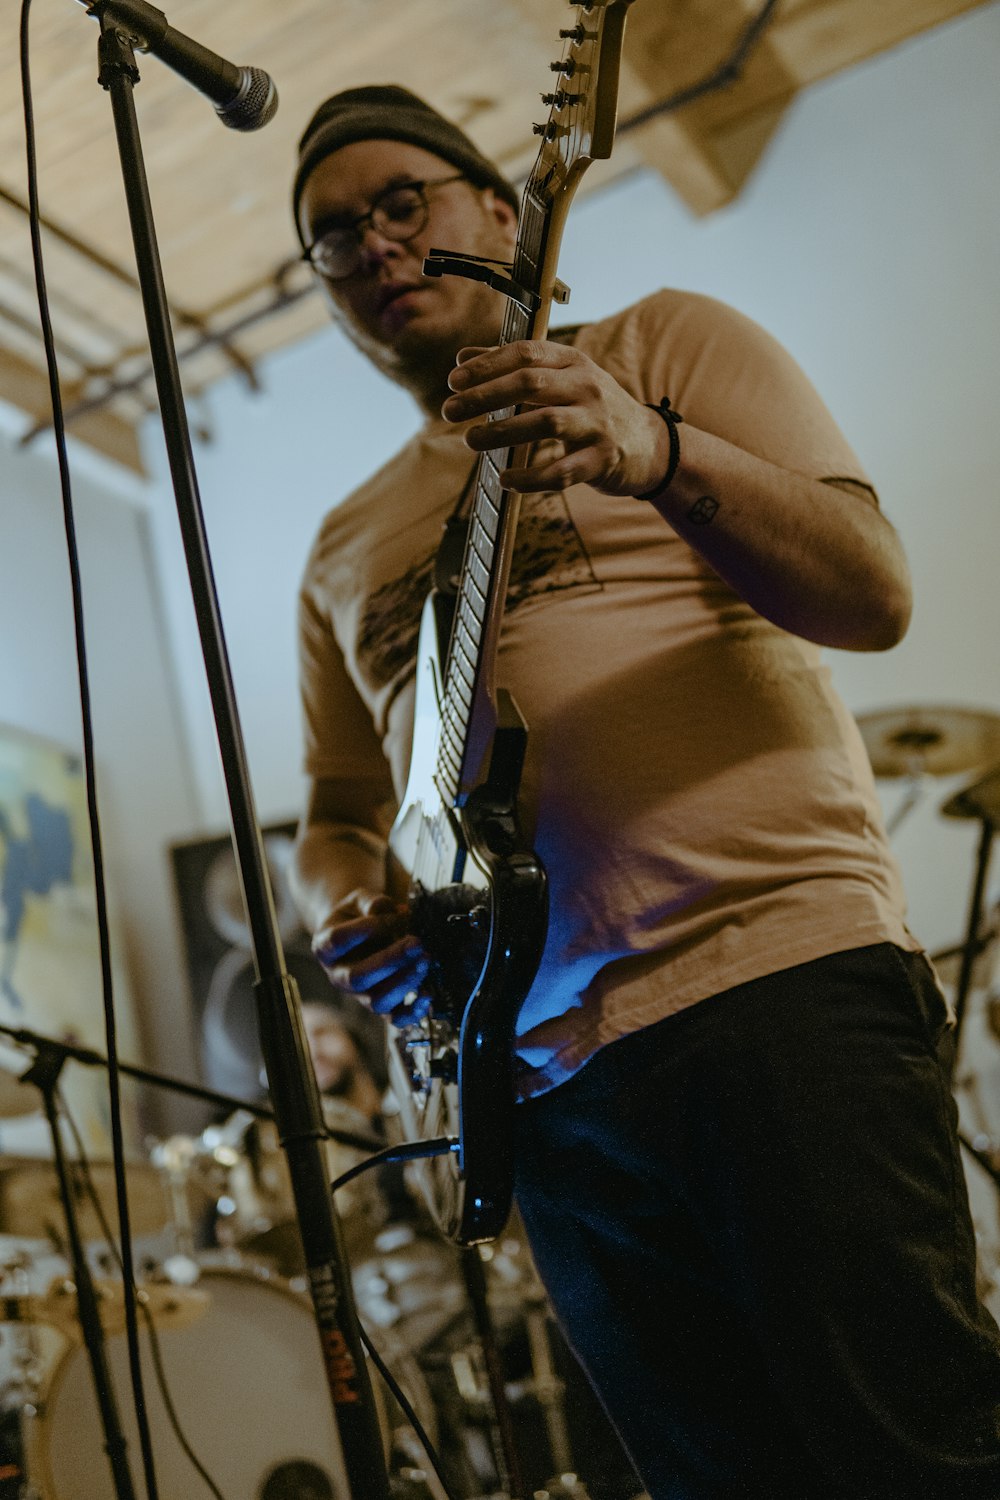 um homem tocando uma guitarra na frente de um microfone